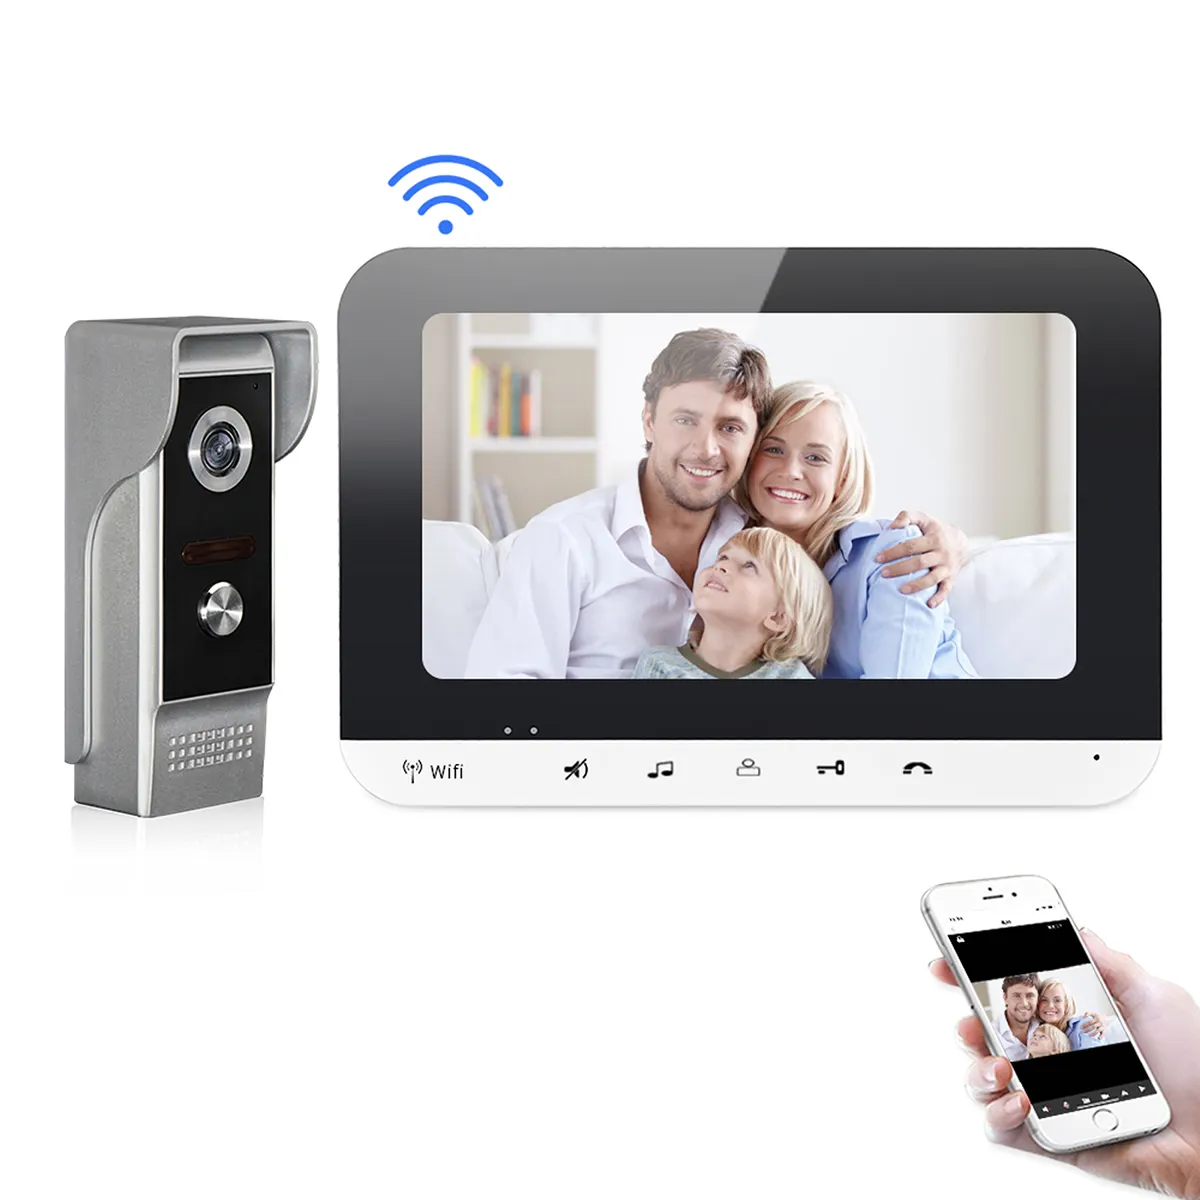 Support tuya 7 inch door viewer peephole camera wireless audio door bell intercom wifi digital touch key video doorbell system